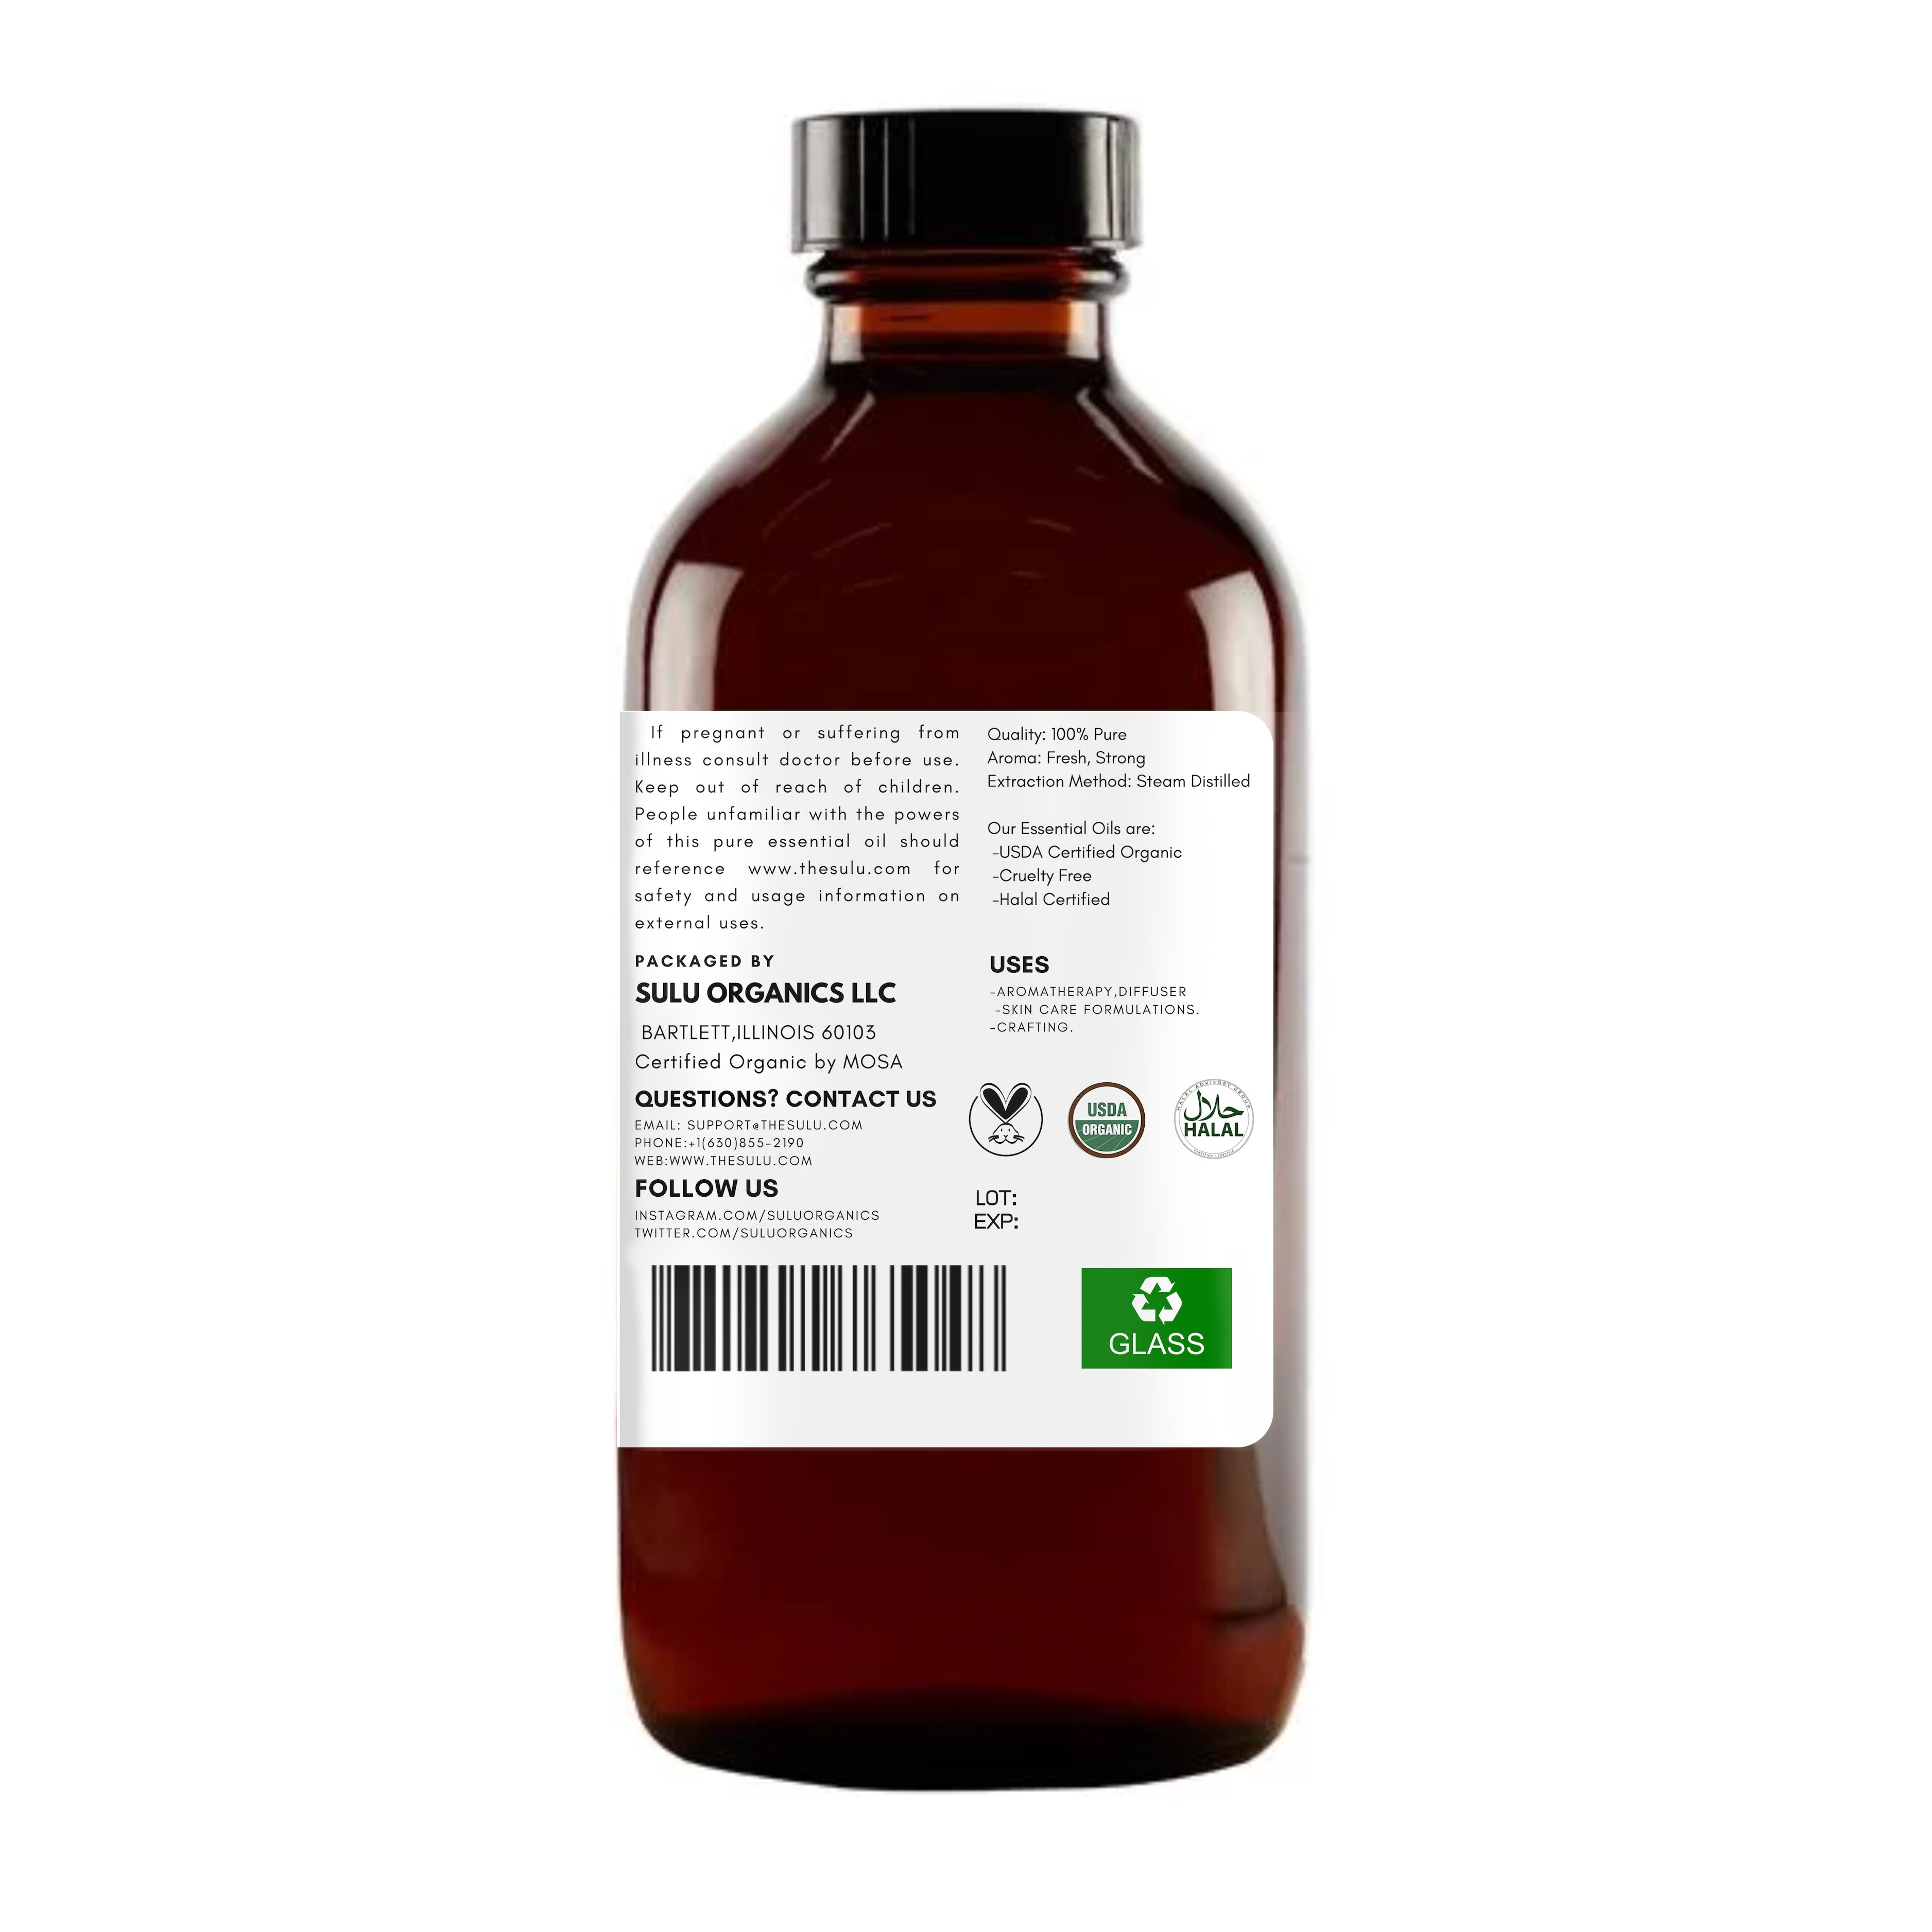 Roman Chamomile 100% Pure (Therapeutic Grade) Essential 100% Pure